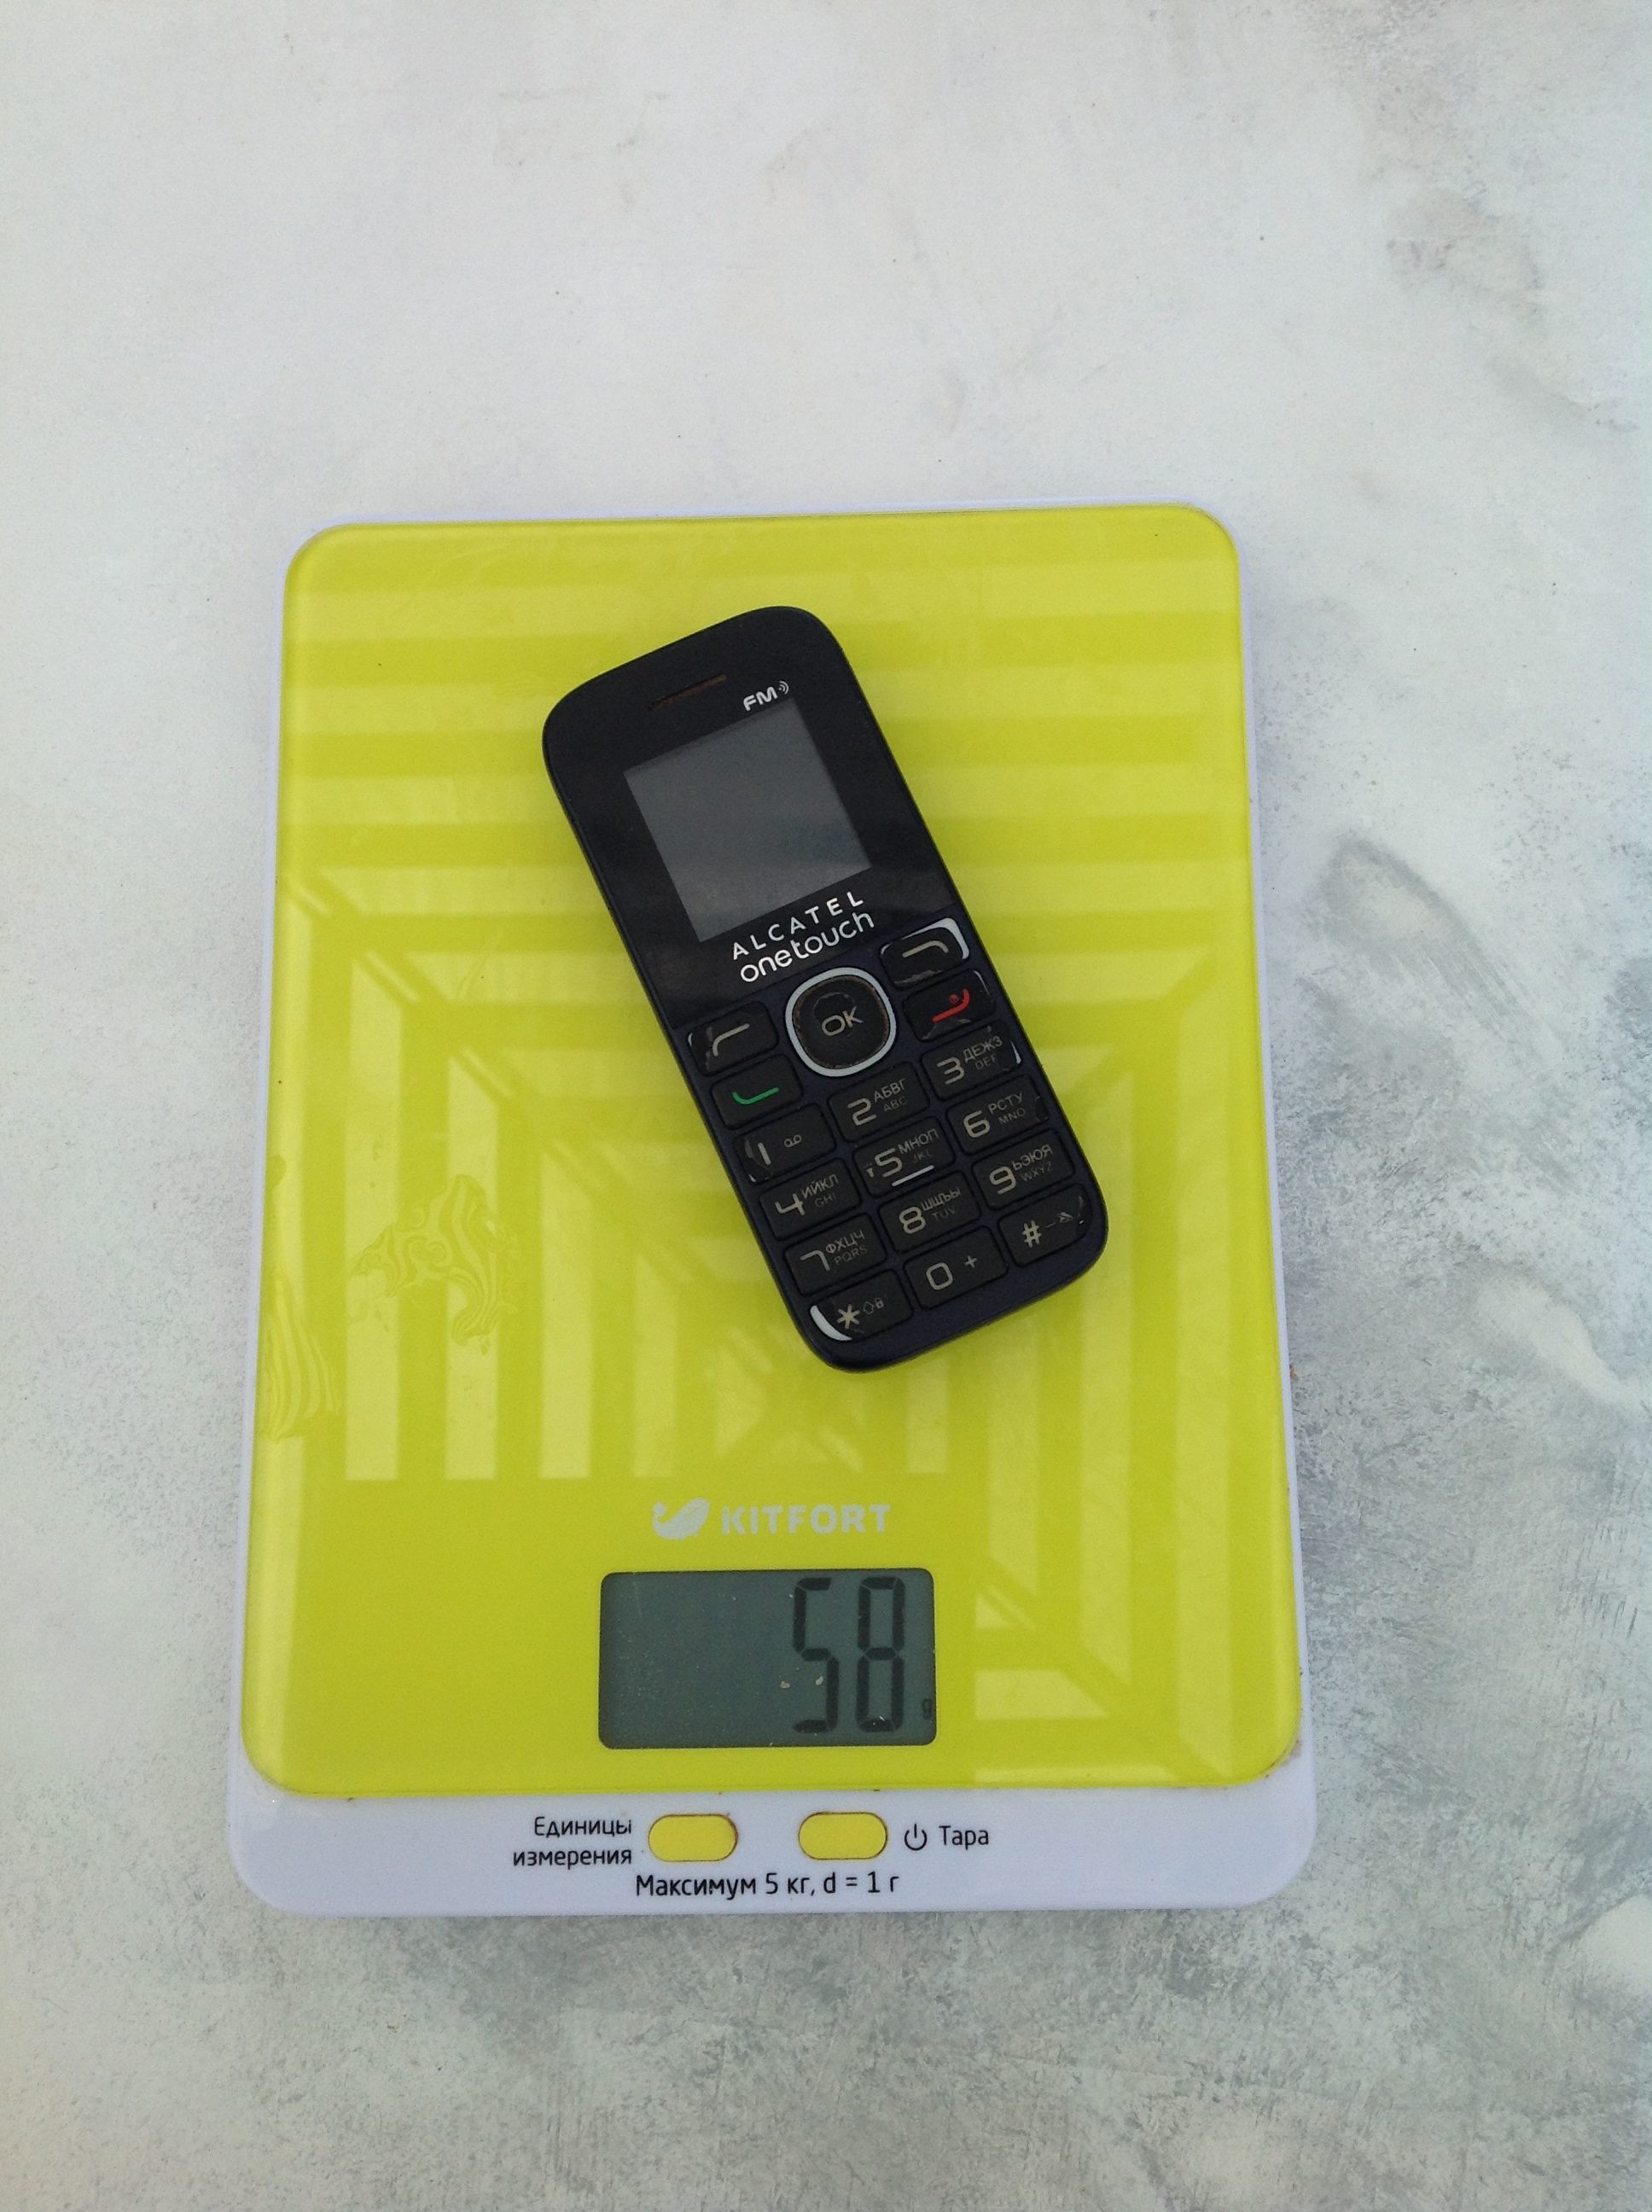 Alcatel One Touch telefonun ağırlığı ne kadardır?